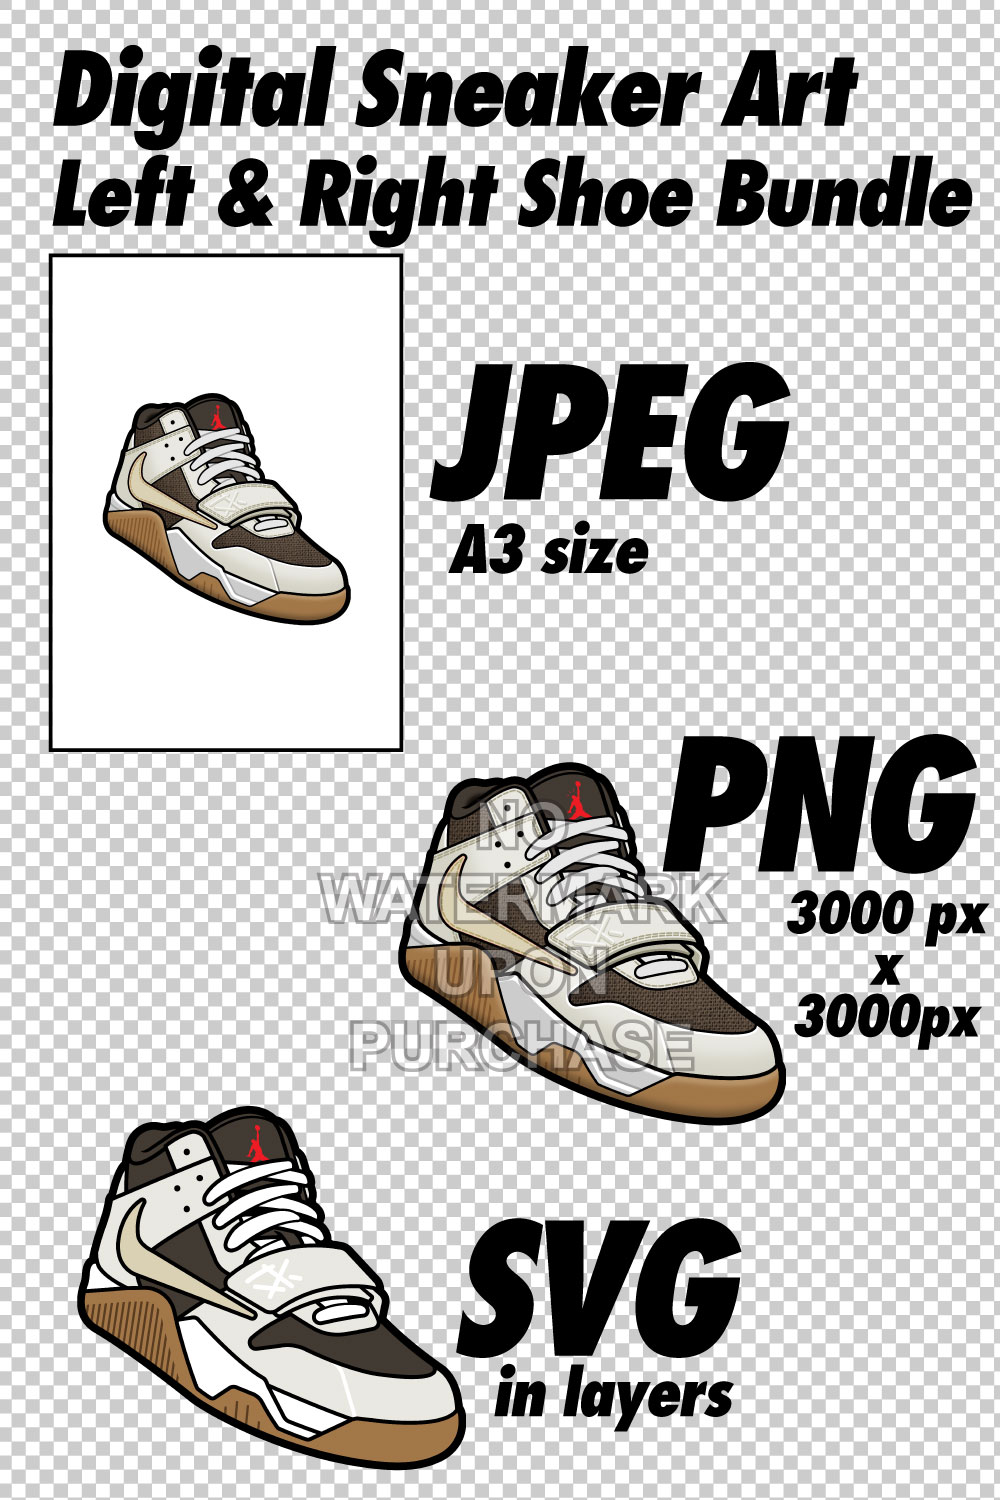 Jumpman Jack Sail JPEG PNG SVG right & left shoe bundle pinterest preview image.